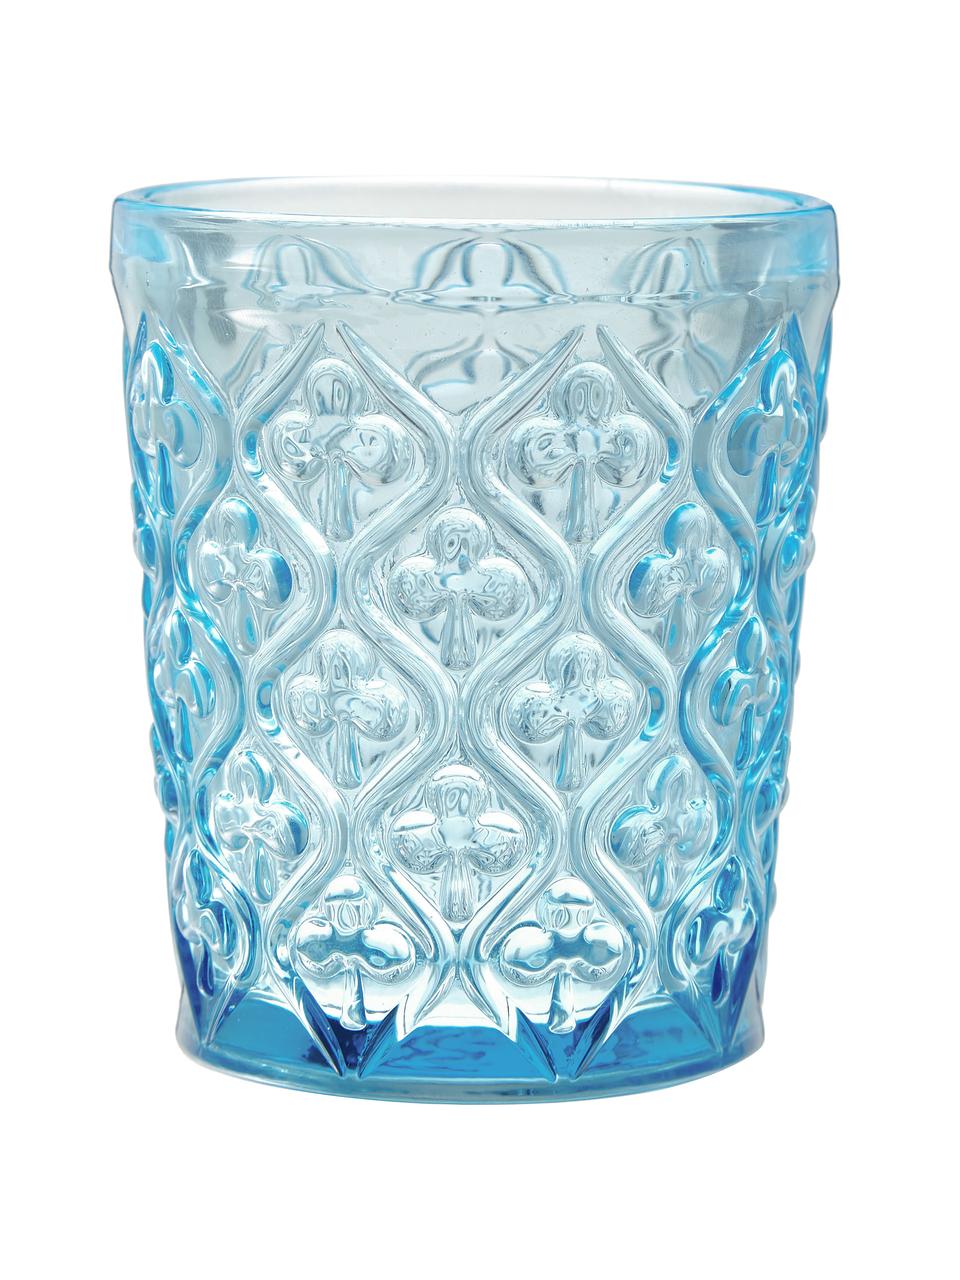 Bicchiere acqua con motivo in rilievo Marrakech, set di 6, Vetro, Blu, lilla, grigio, verde, giallo, trasparente, Ø 8 x Alt. 10 cm